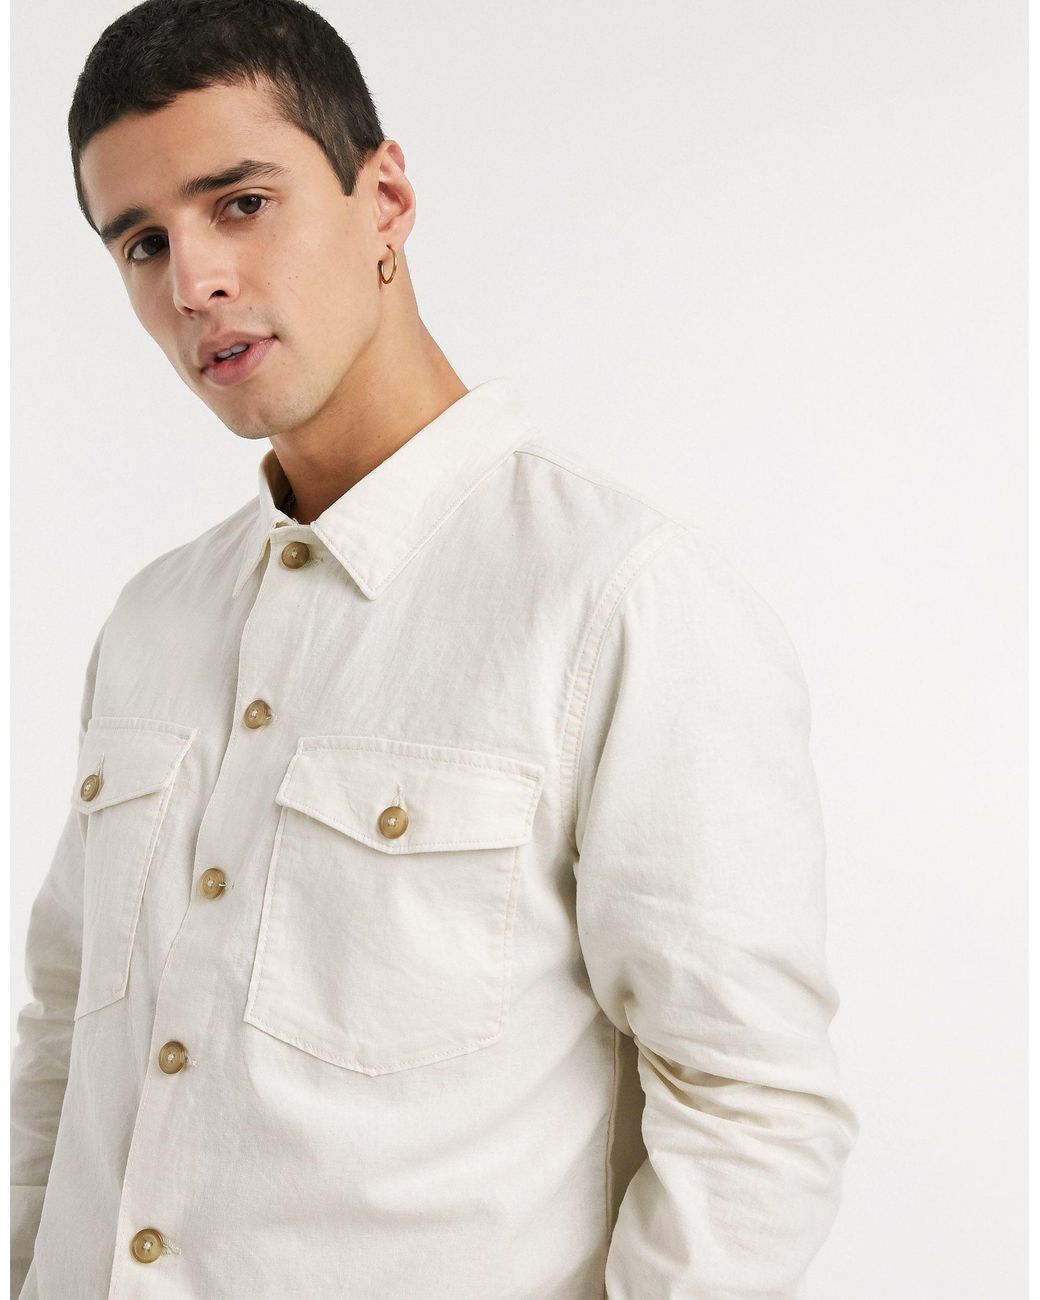 SELECTED Linen Overshirt in White for Men - Lyst